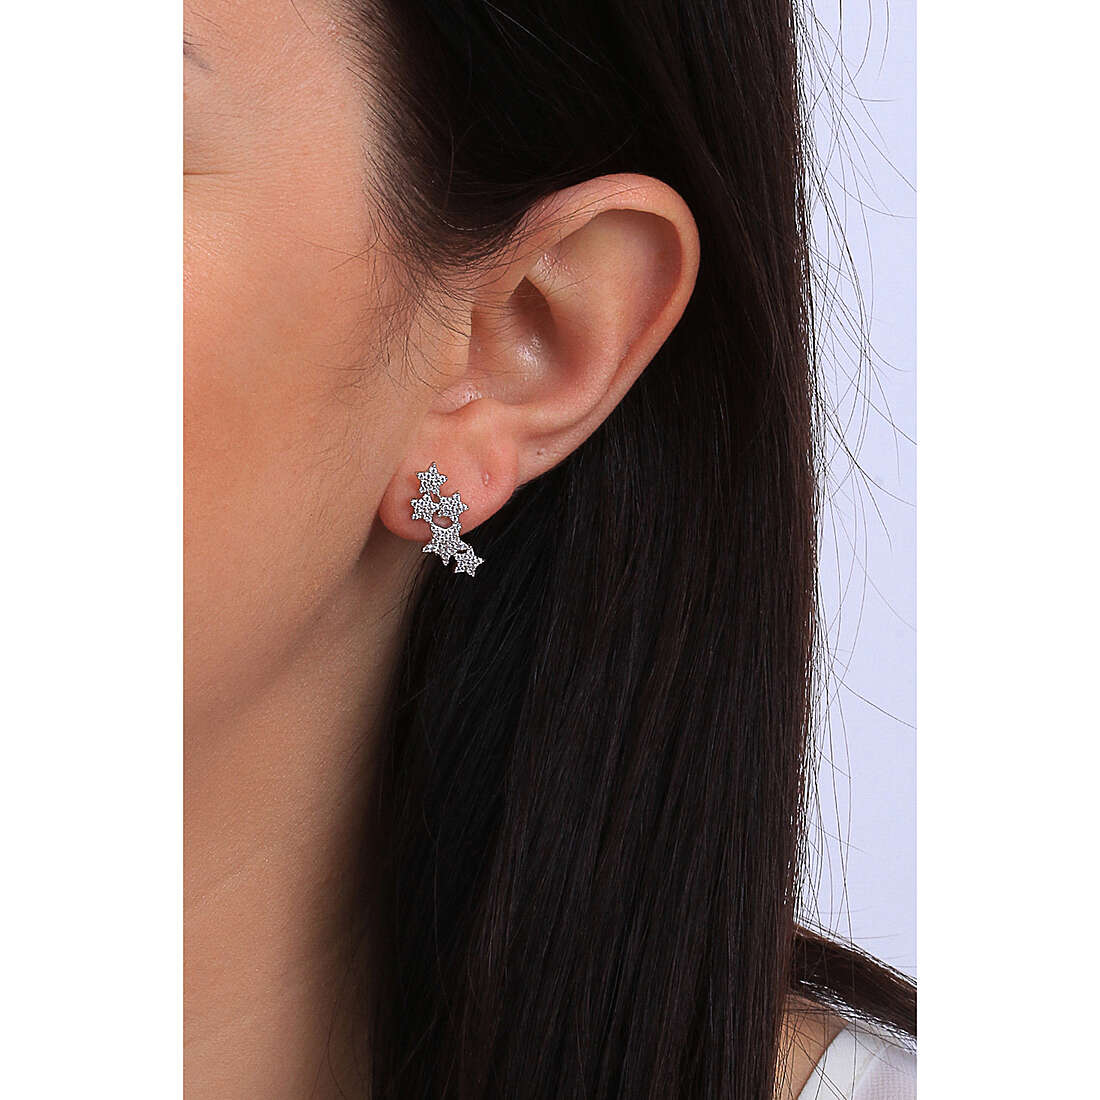 Amen earrings Diamond woman EMSBBZ wearing